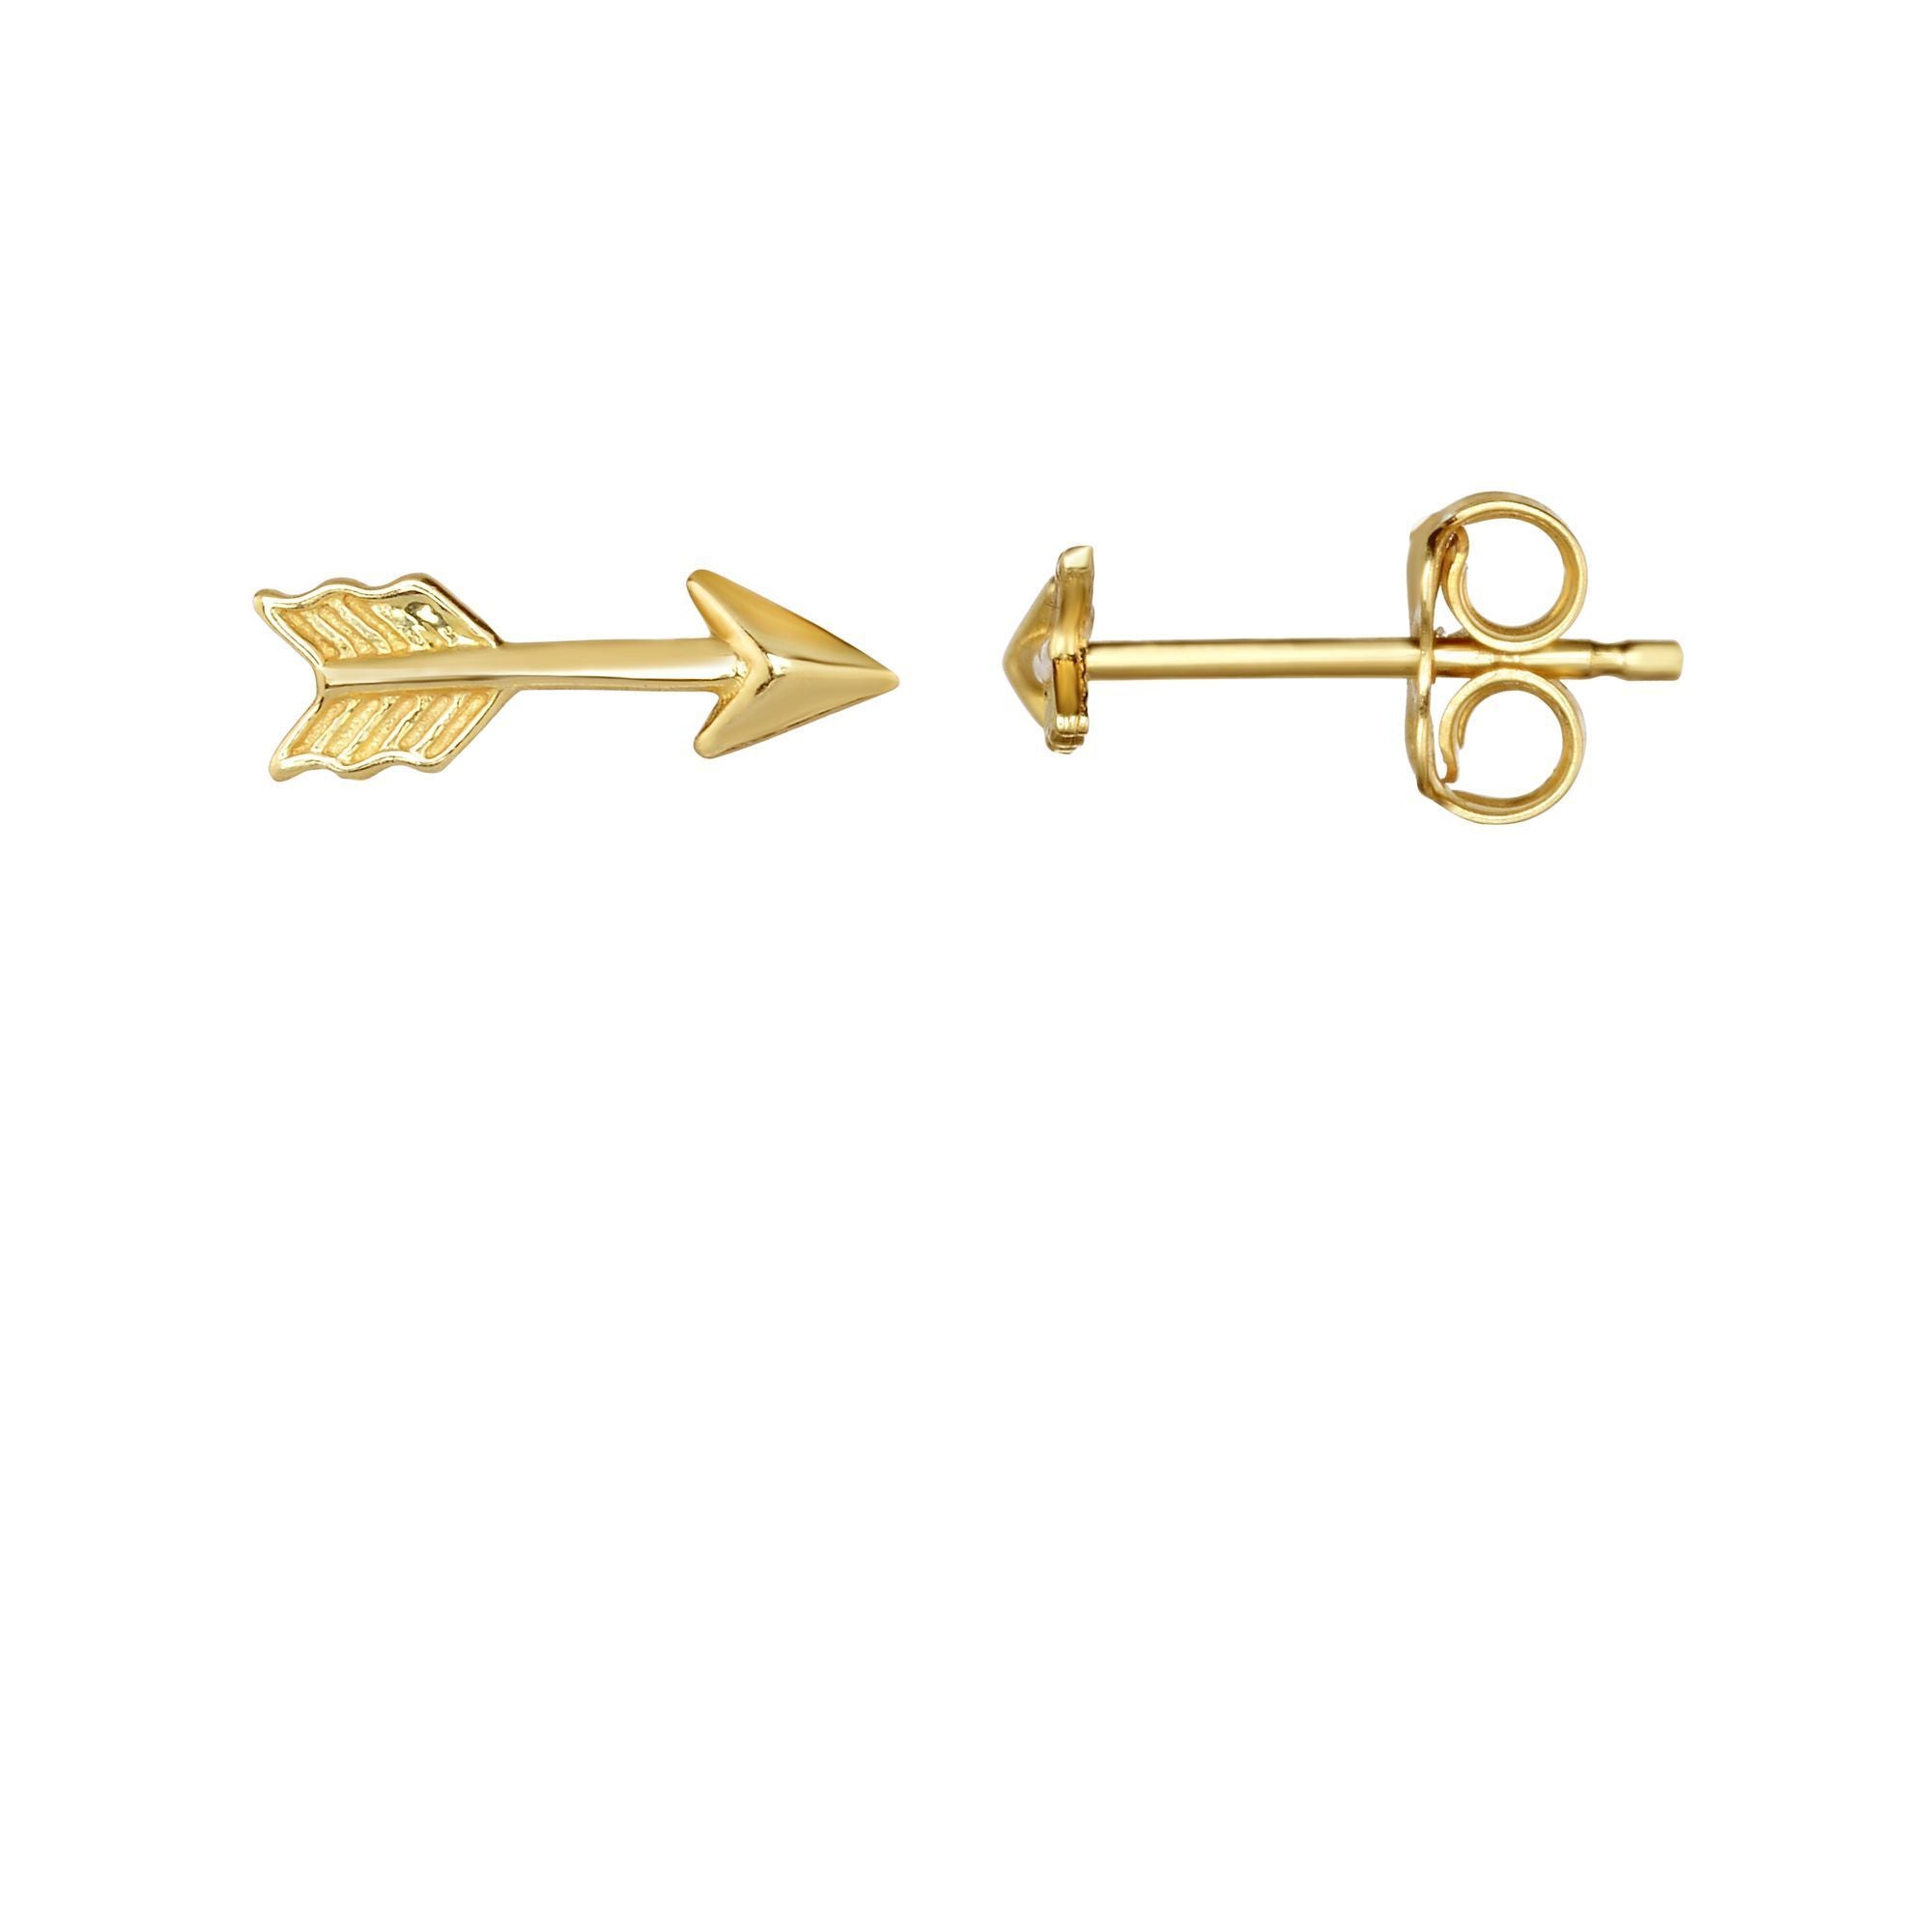 Dainty Solid Gold Arrow Novelty Push Back Stud Earrings - wingroupjewelry